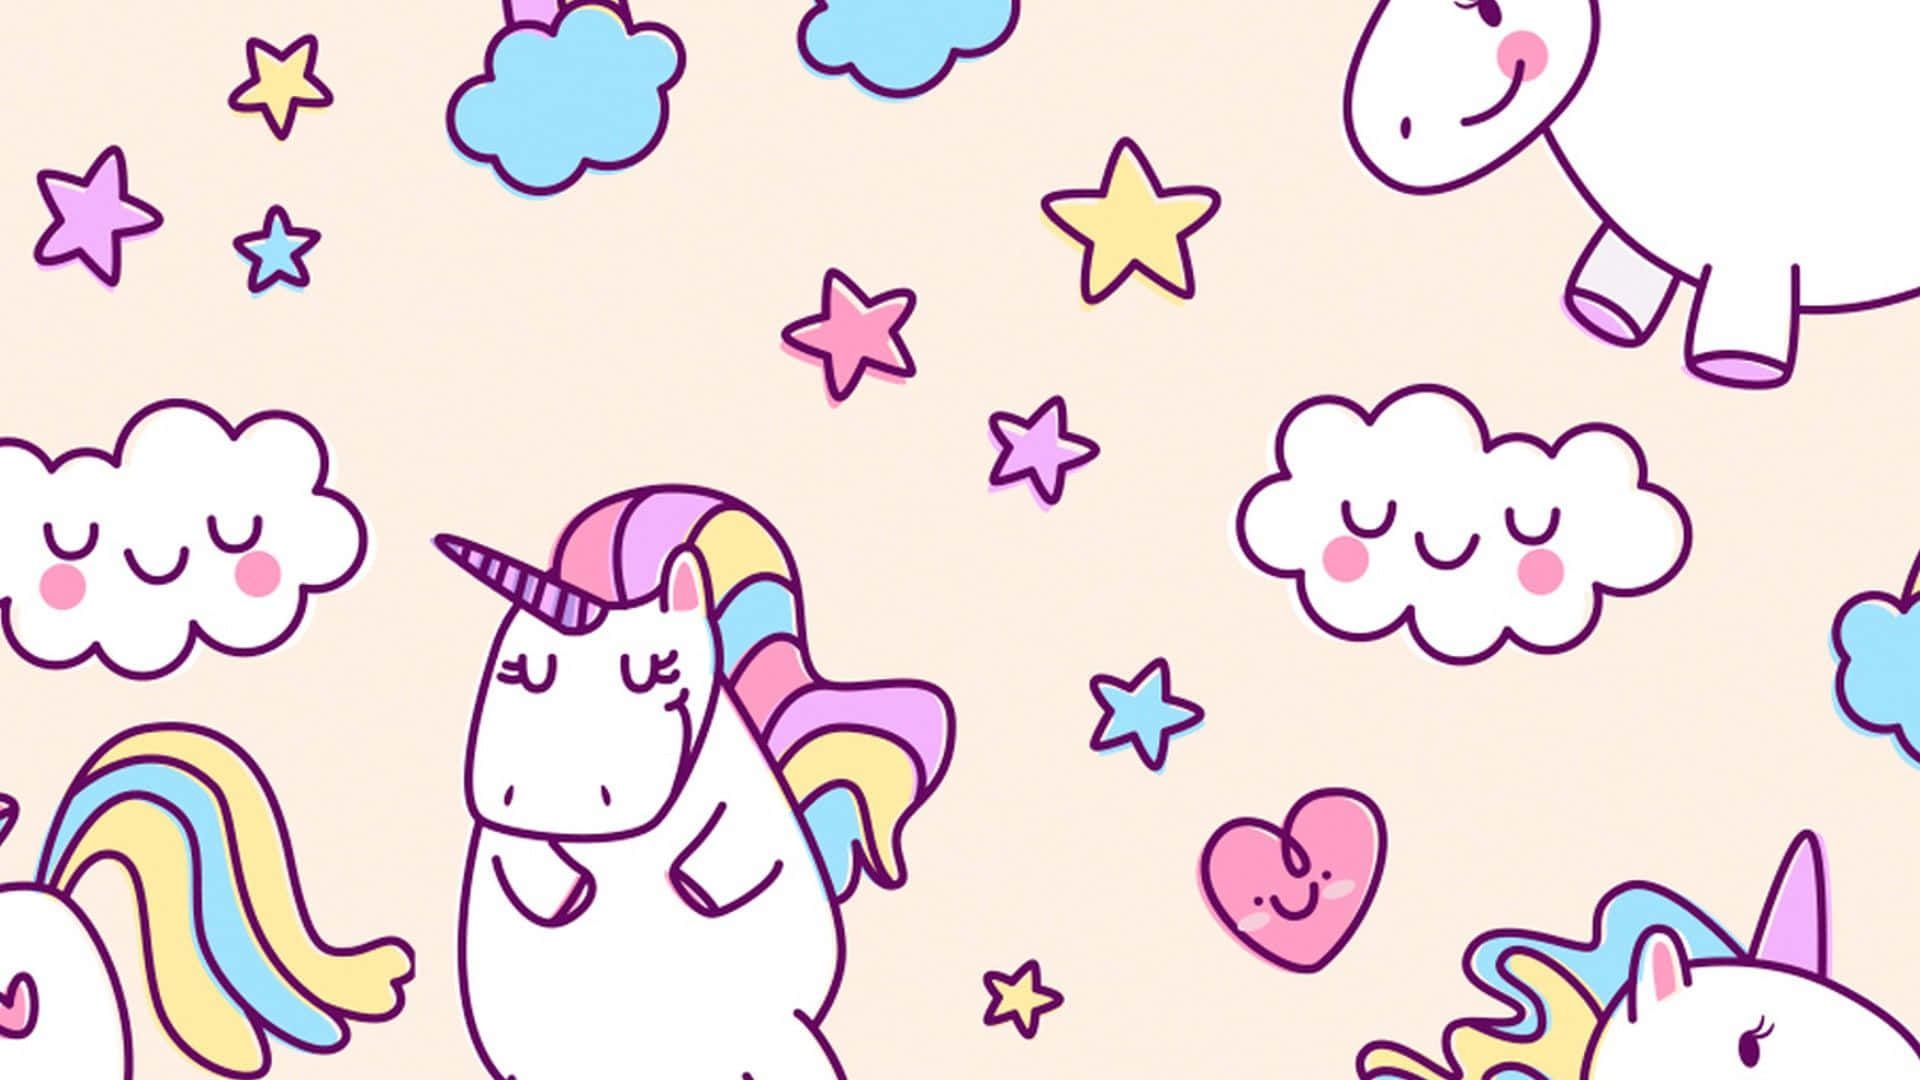 A pattern of cute unicorns, clouds, stars, and hearts. - Unicorn